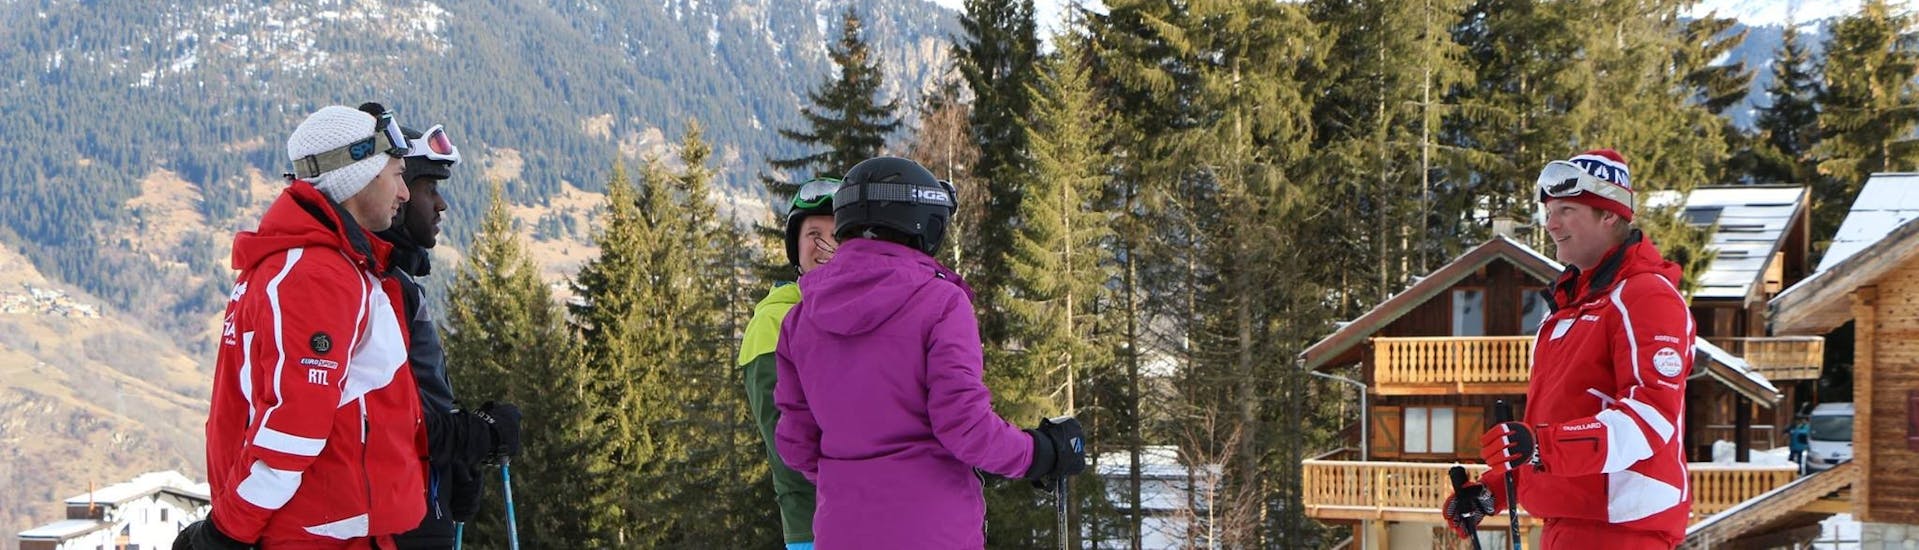 Skiërs luisteren naar de instructies van hun instructeur tijdens hun privé skilessen voor volwassenen van alle niveaus bij ESF La Tania.